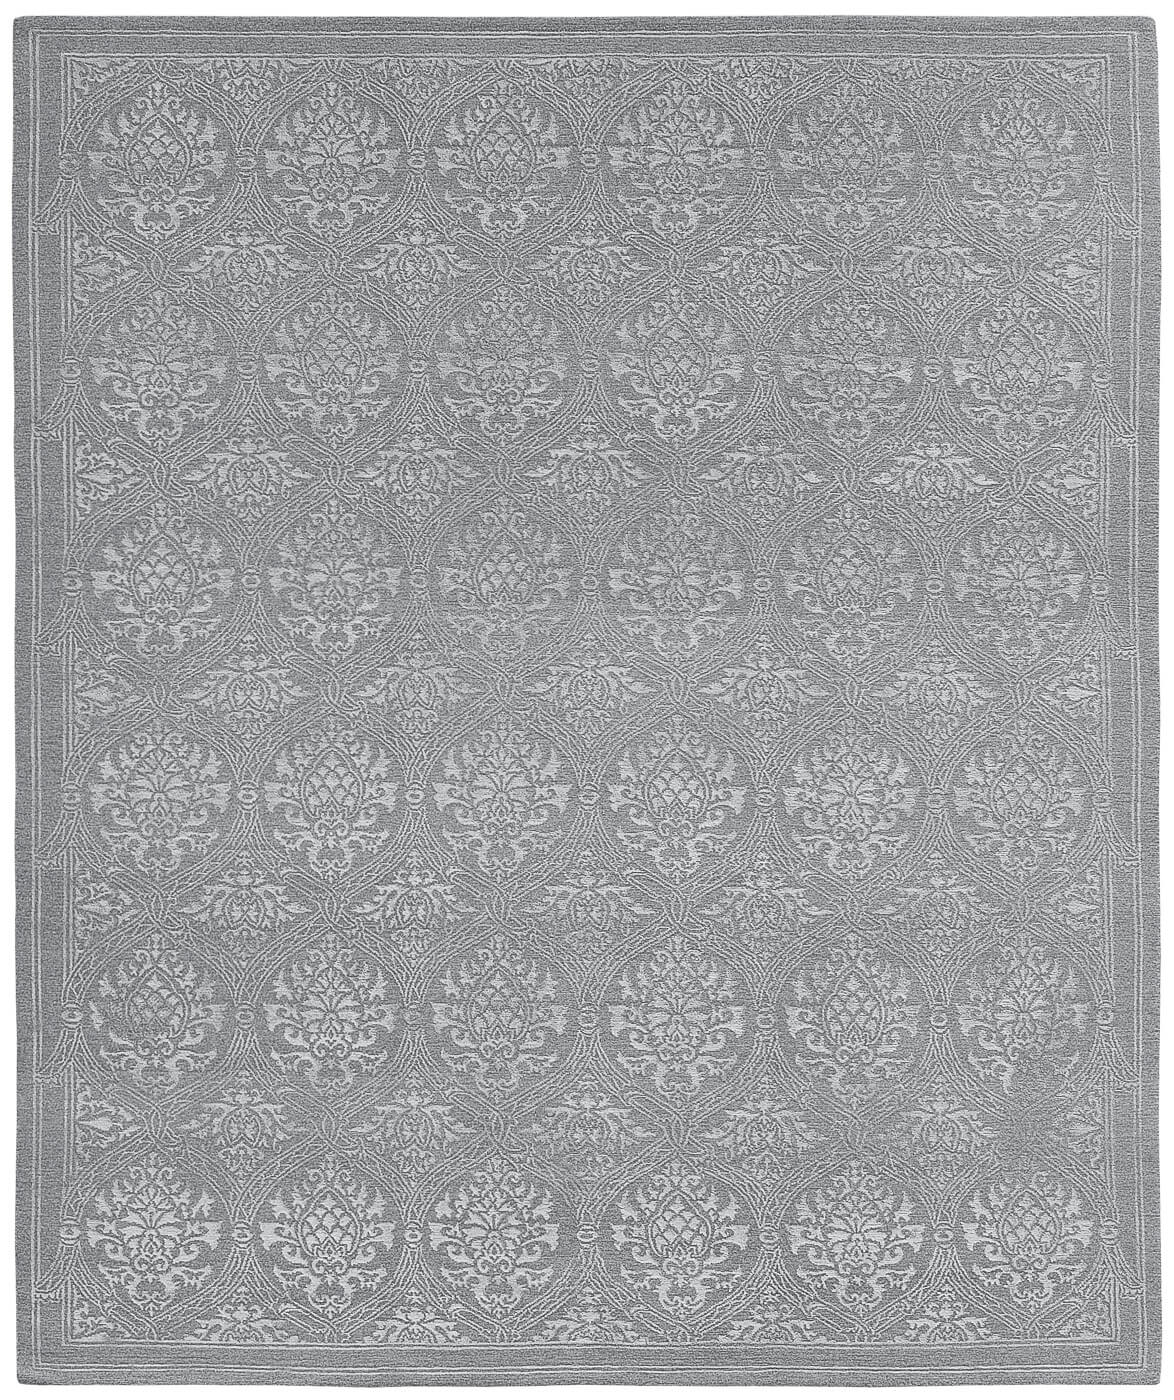 Sanssouci Grey Luxury Hand-woven Rug ☞ Size: 200 x 300 cm